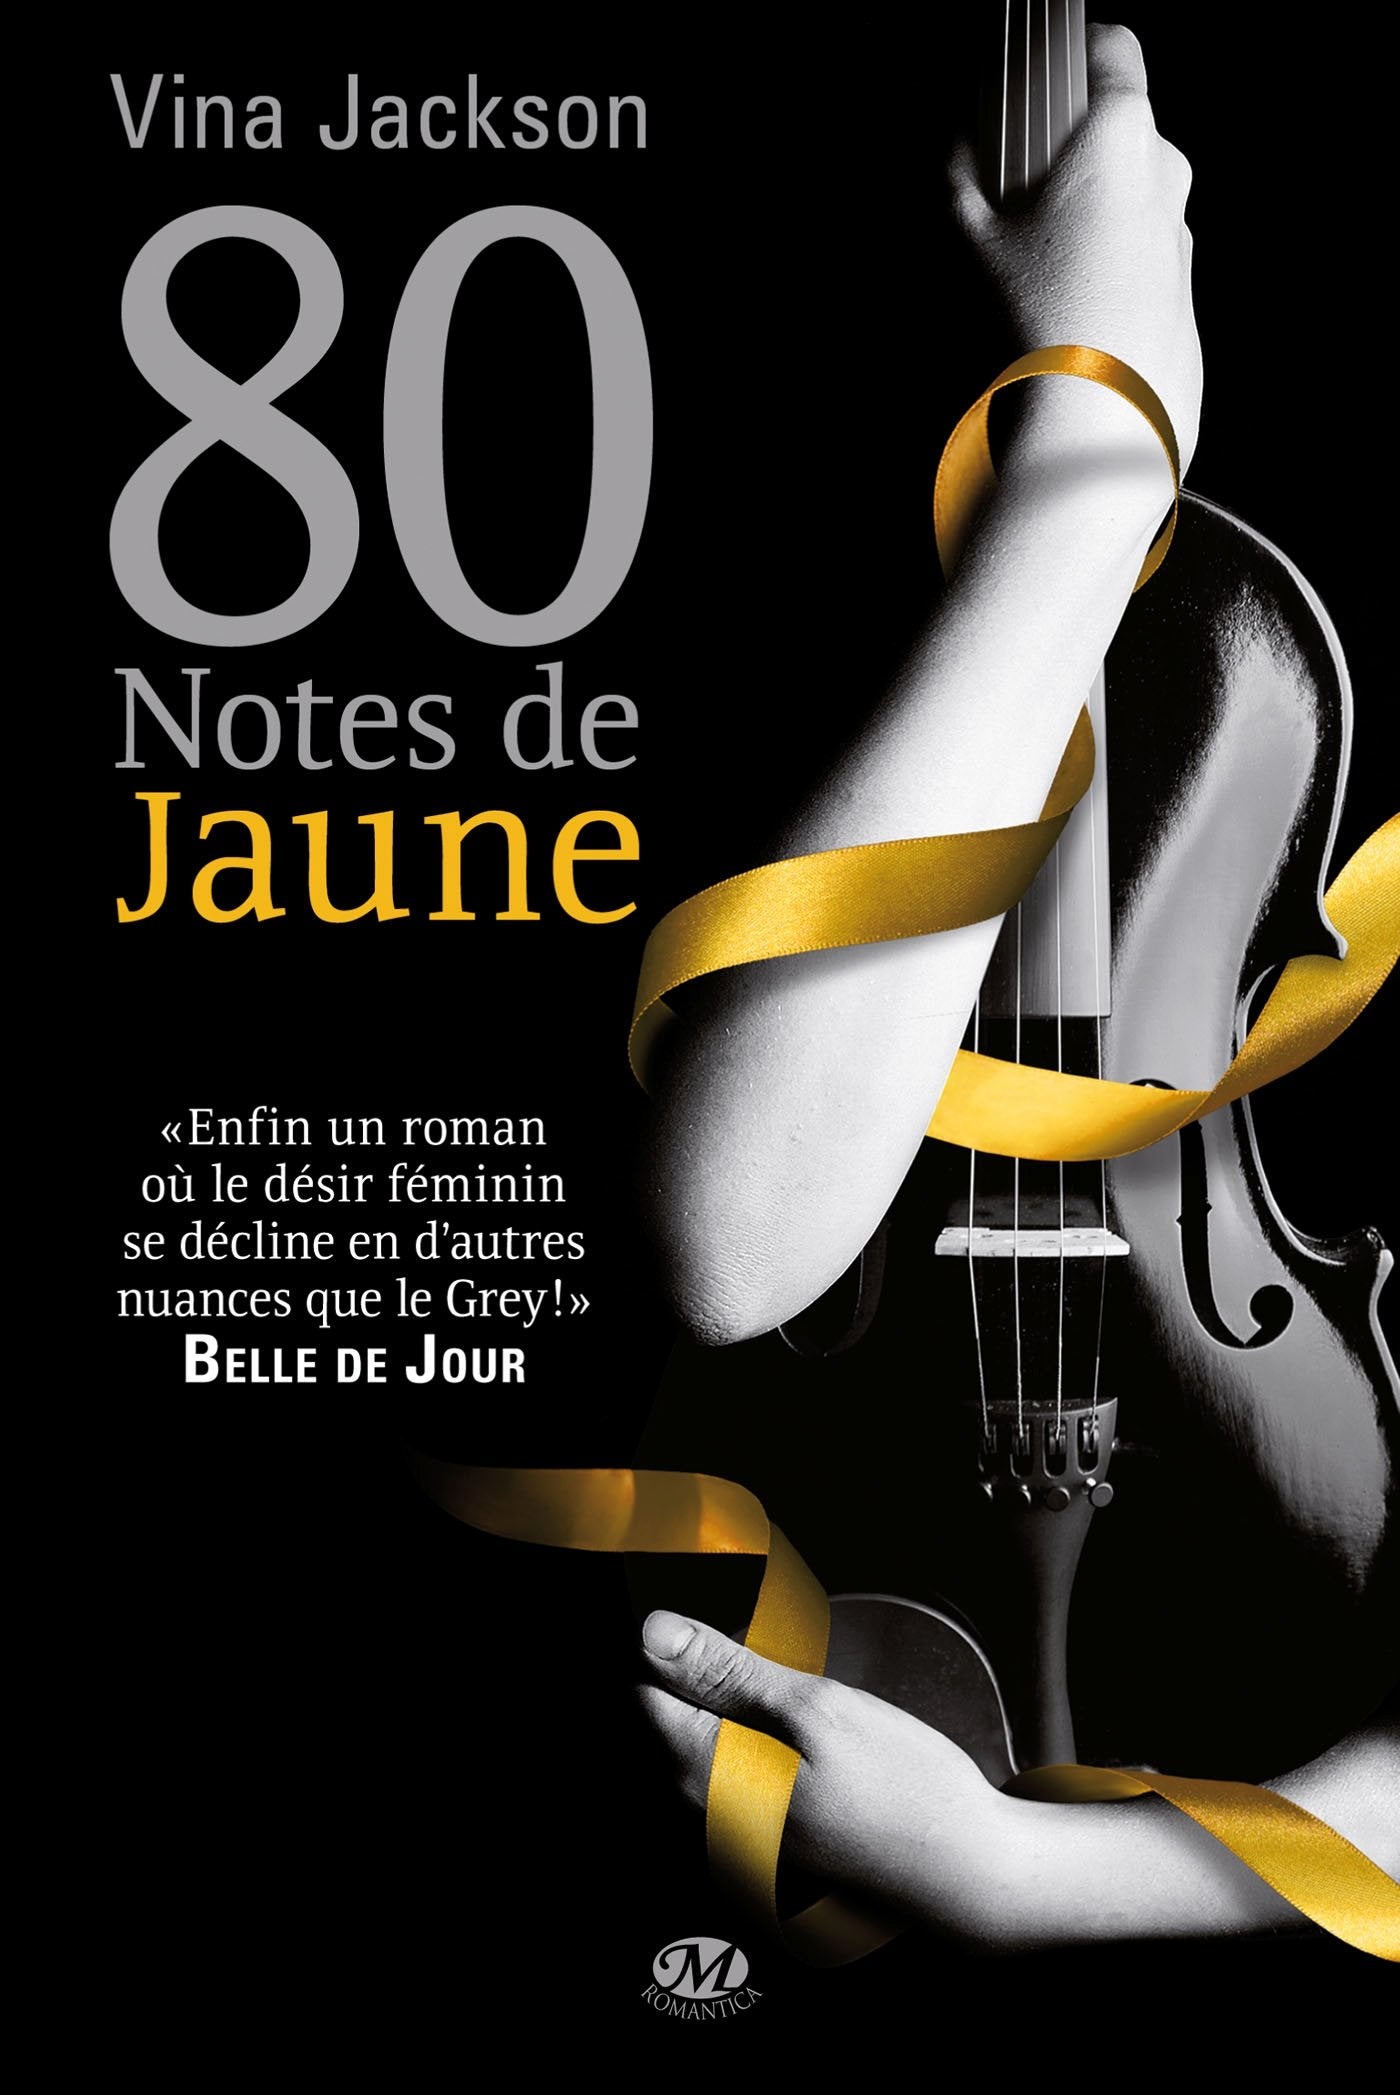 Livre ISBN 2811210202 80 Notes : 80 notes de jaune (Vina Jackson)